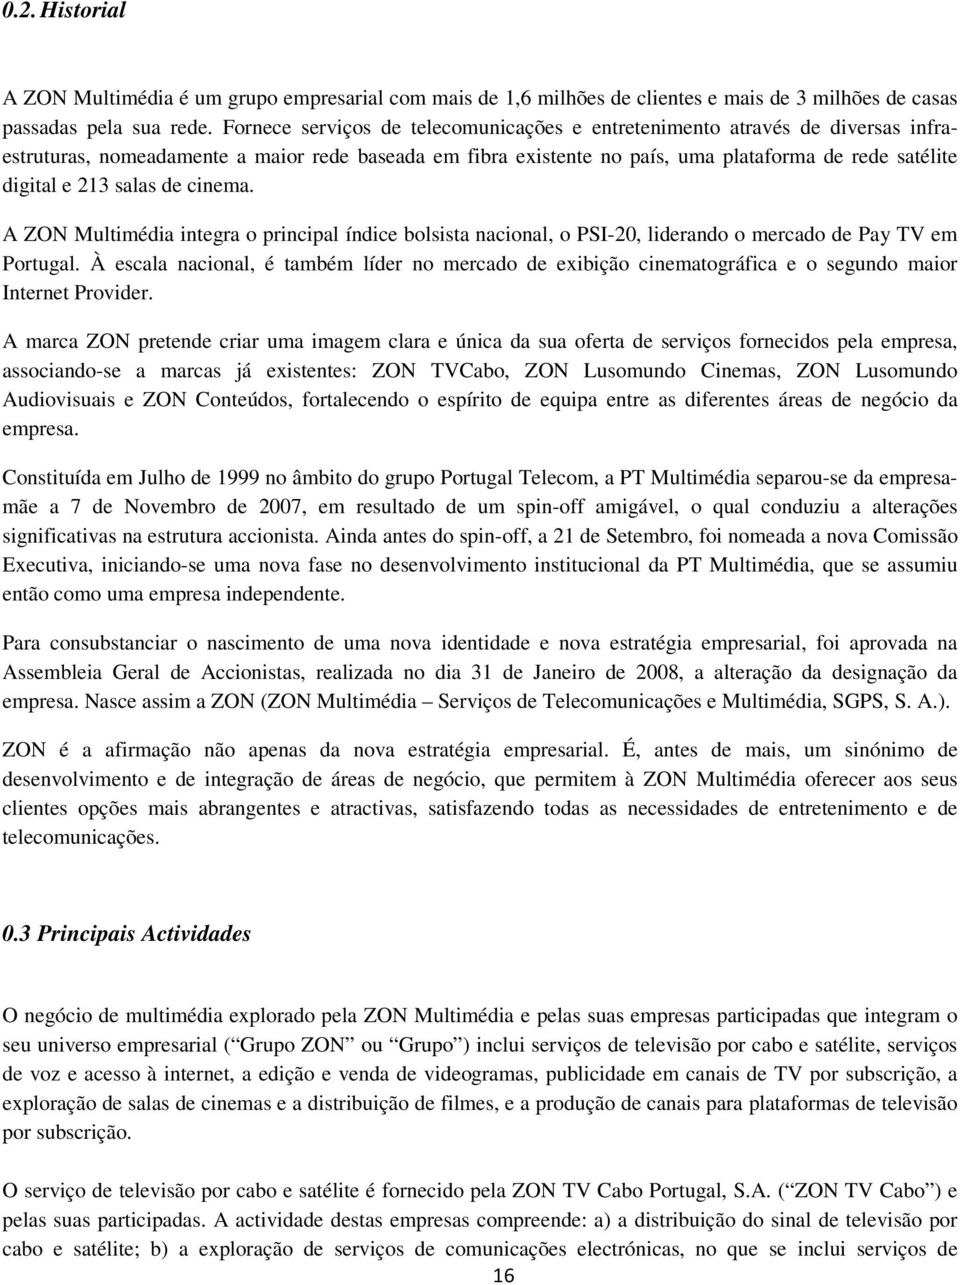 salas de cinema. A ZON Multimédia integra o principal índice bolsista nacional, o PSI-20, liderando o mercado de Pay TV em Portugal.